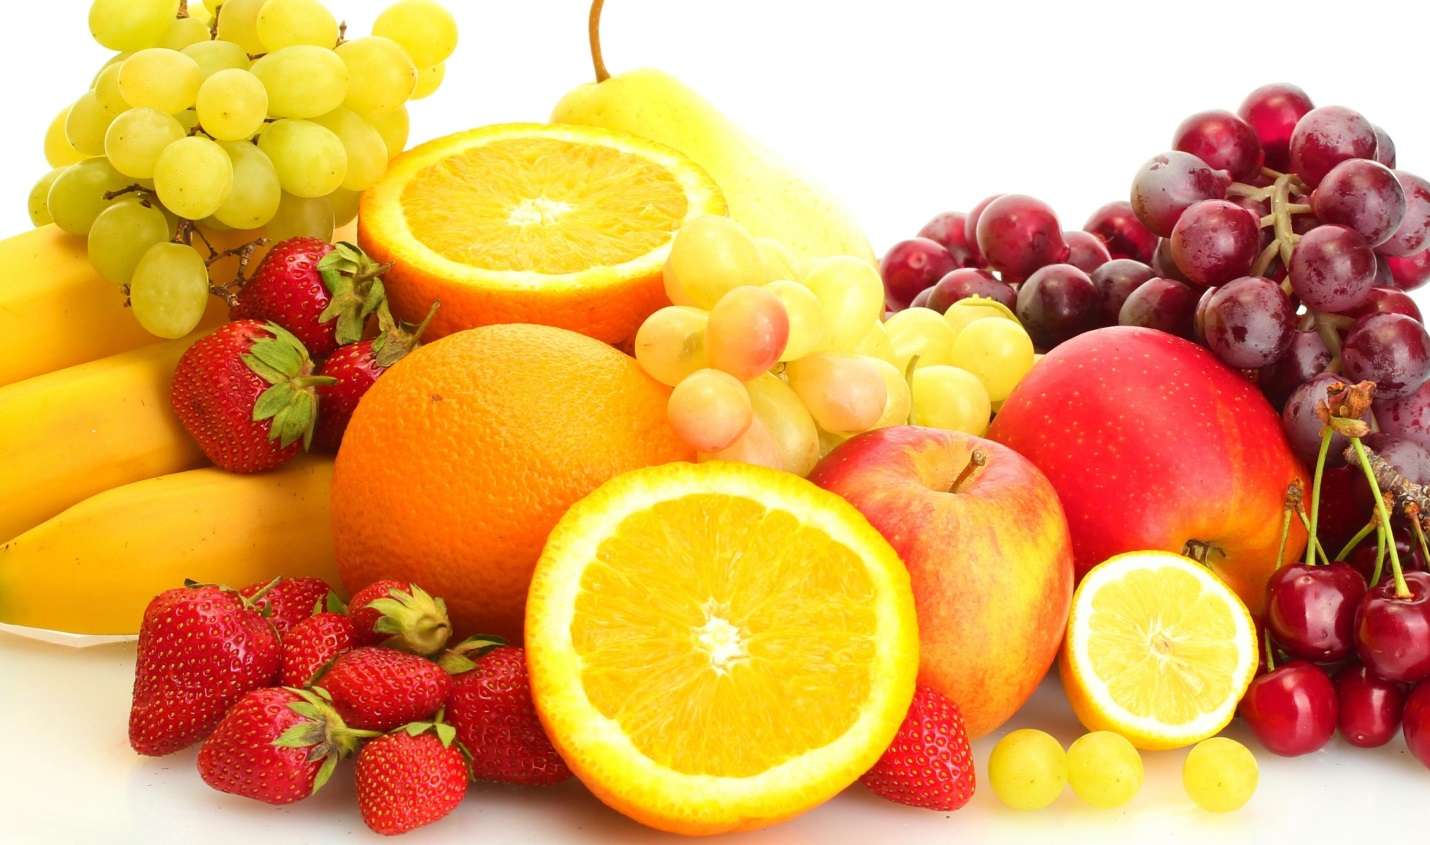 Hầu hết tất cả các loại trái cây ở Việt Nam đều bị cấm mang vào Nhật Bản